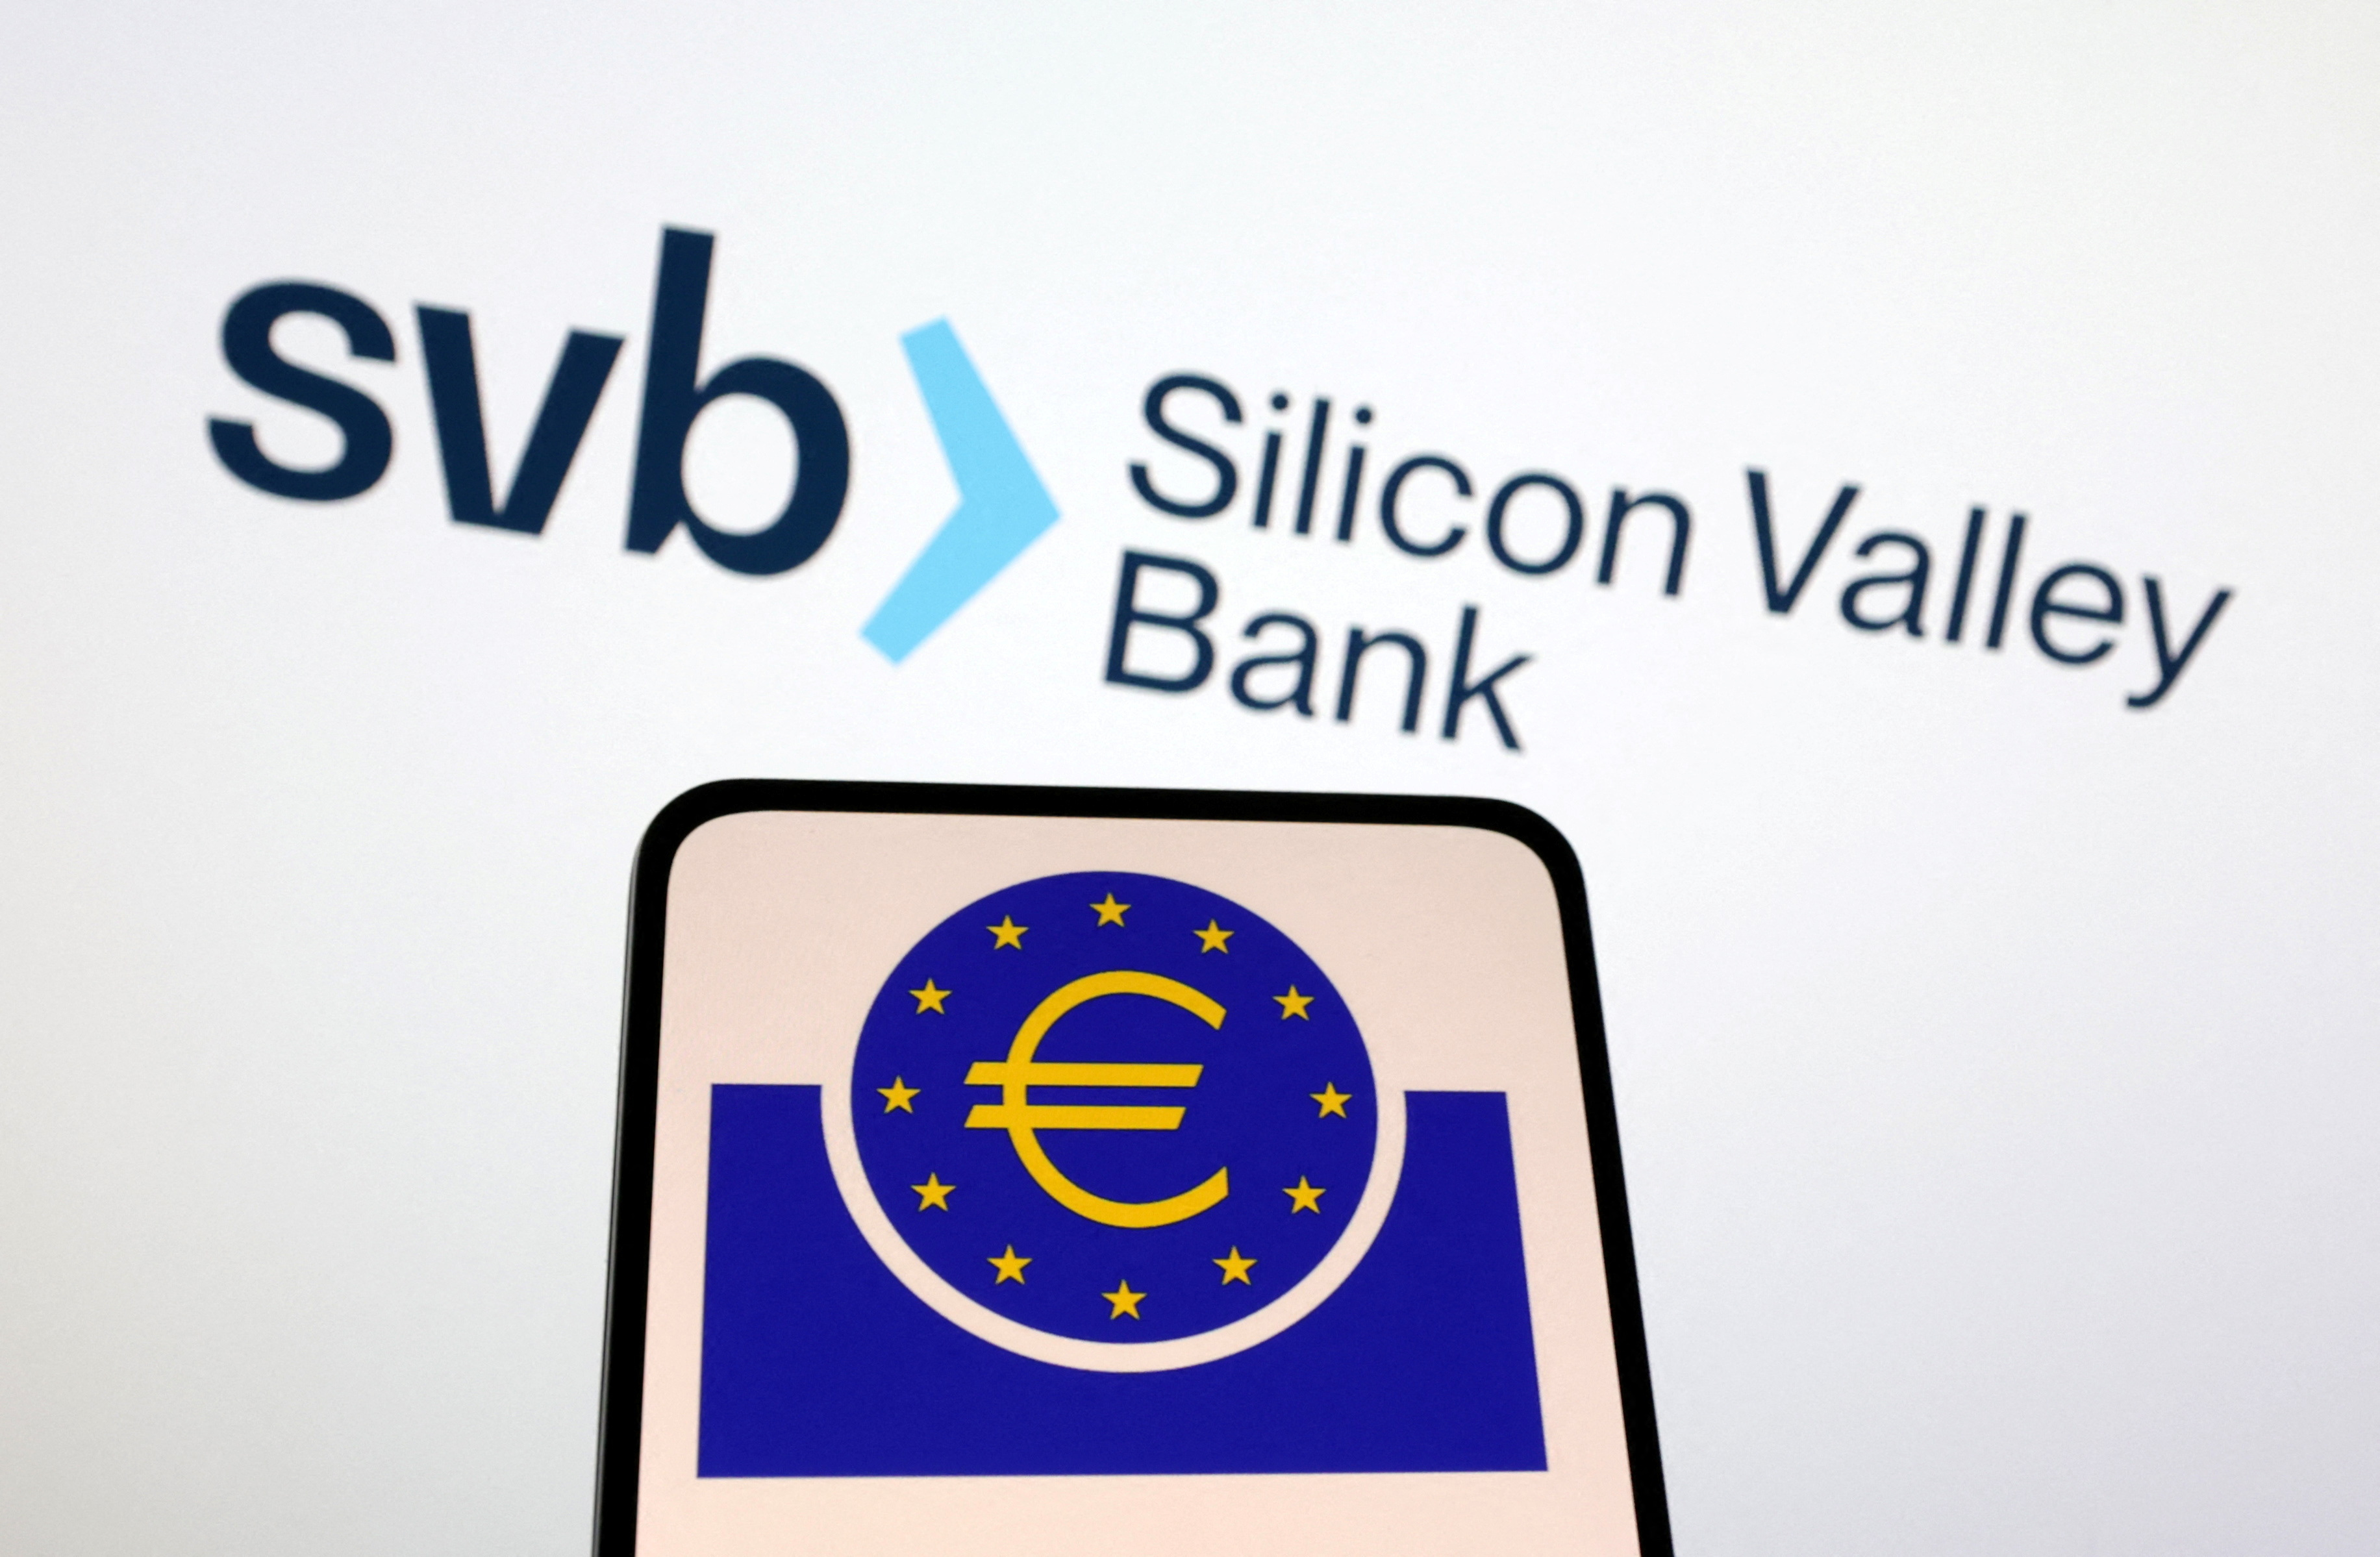 Illustration shows European Central Bank and SVB (Silicon Valley Bank) logos